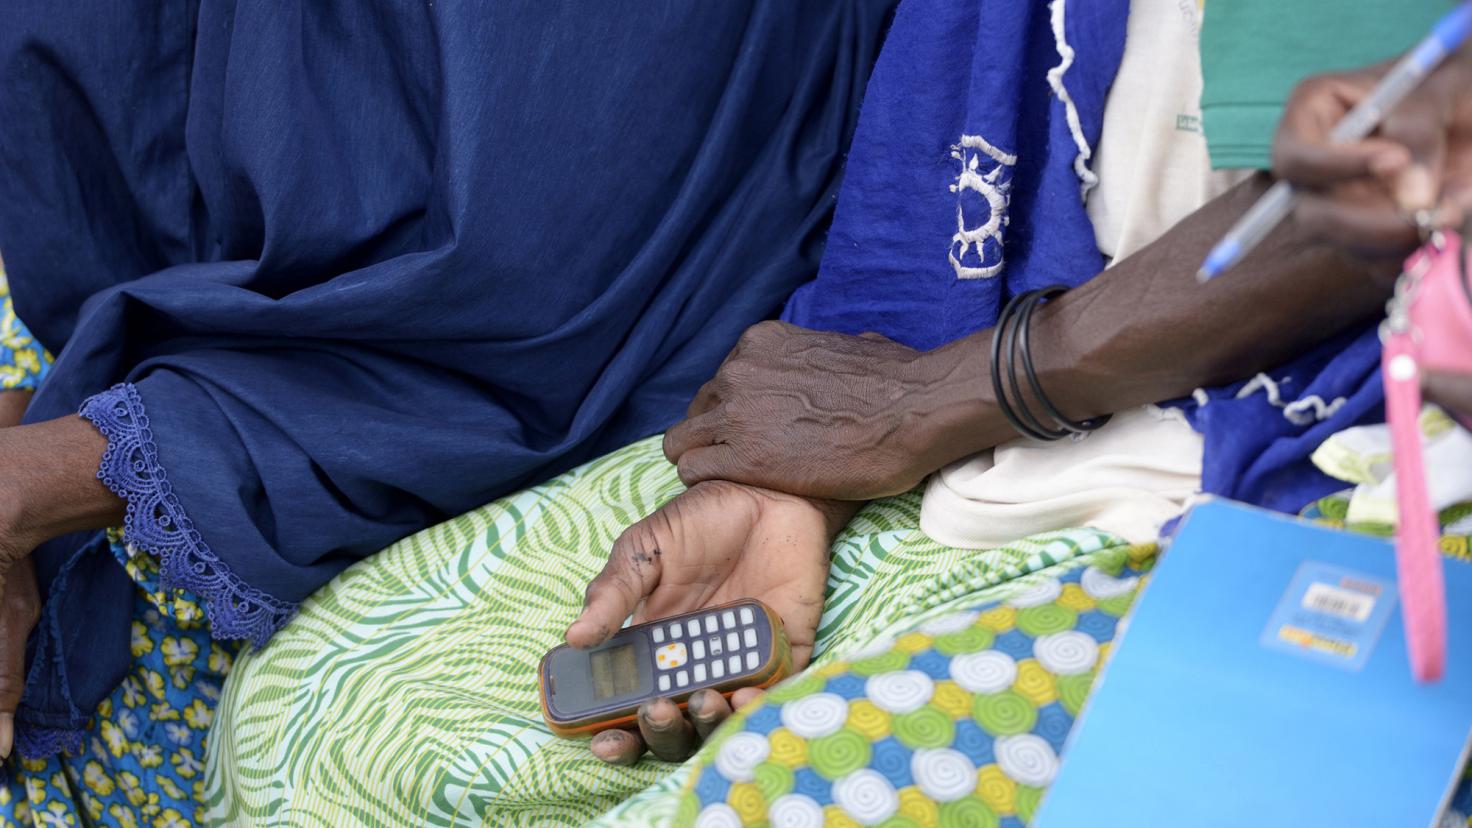 Burkina Faso, žena držiaca mobilný telefón